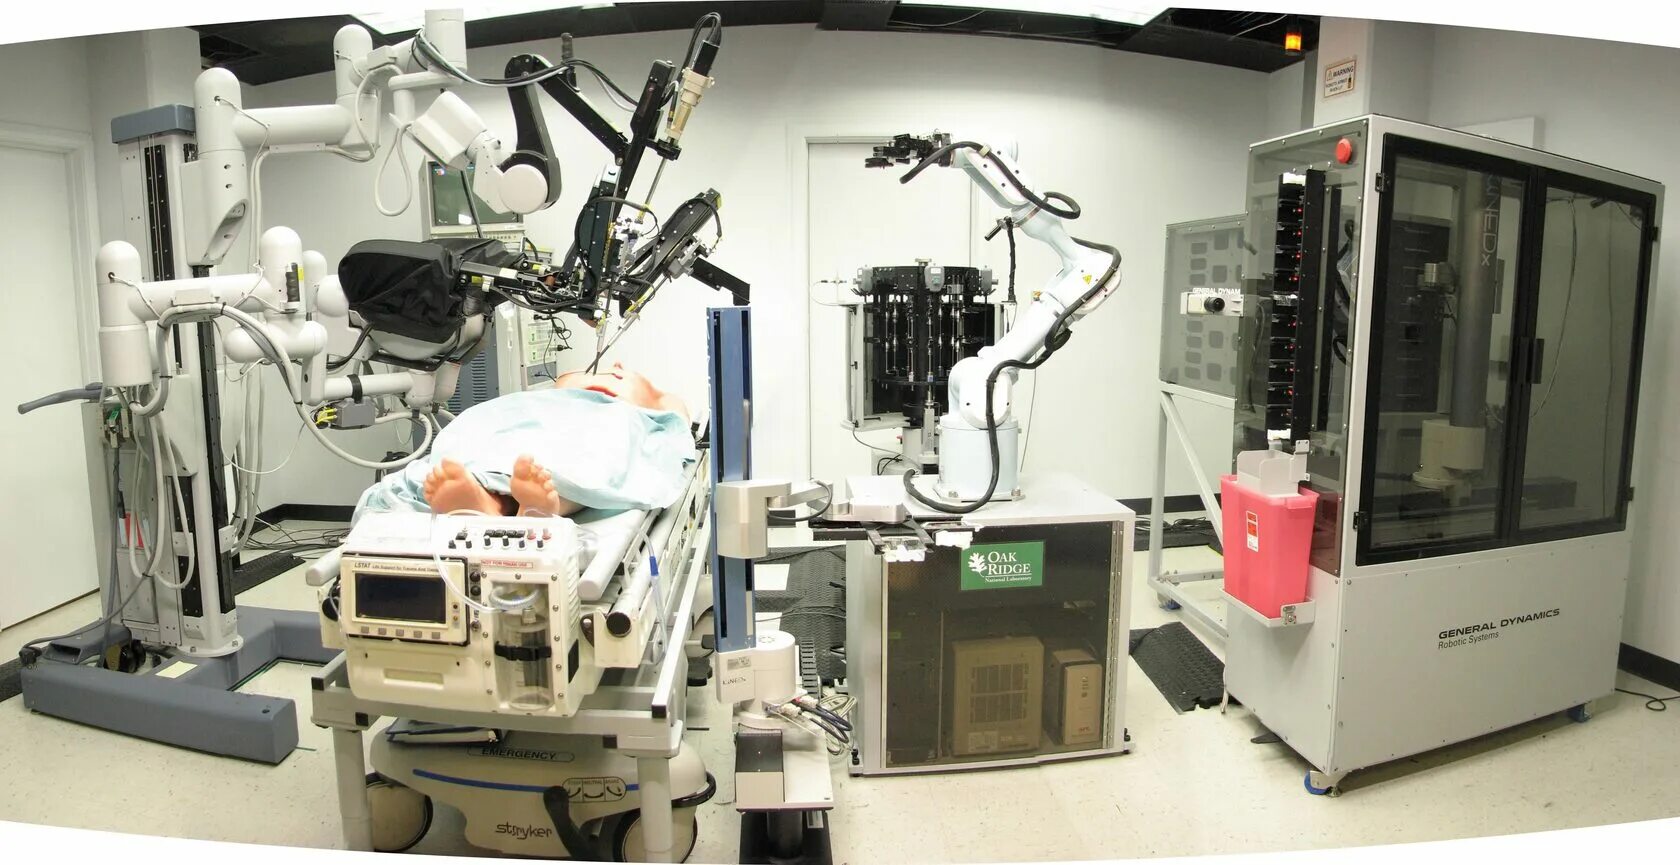 Da Vinci робот-хирург. Робот-хирург da Vinci. (2000). Роботизированная хирургия. Роботы для операций в медицине.